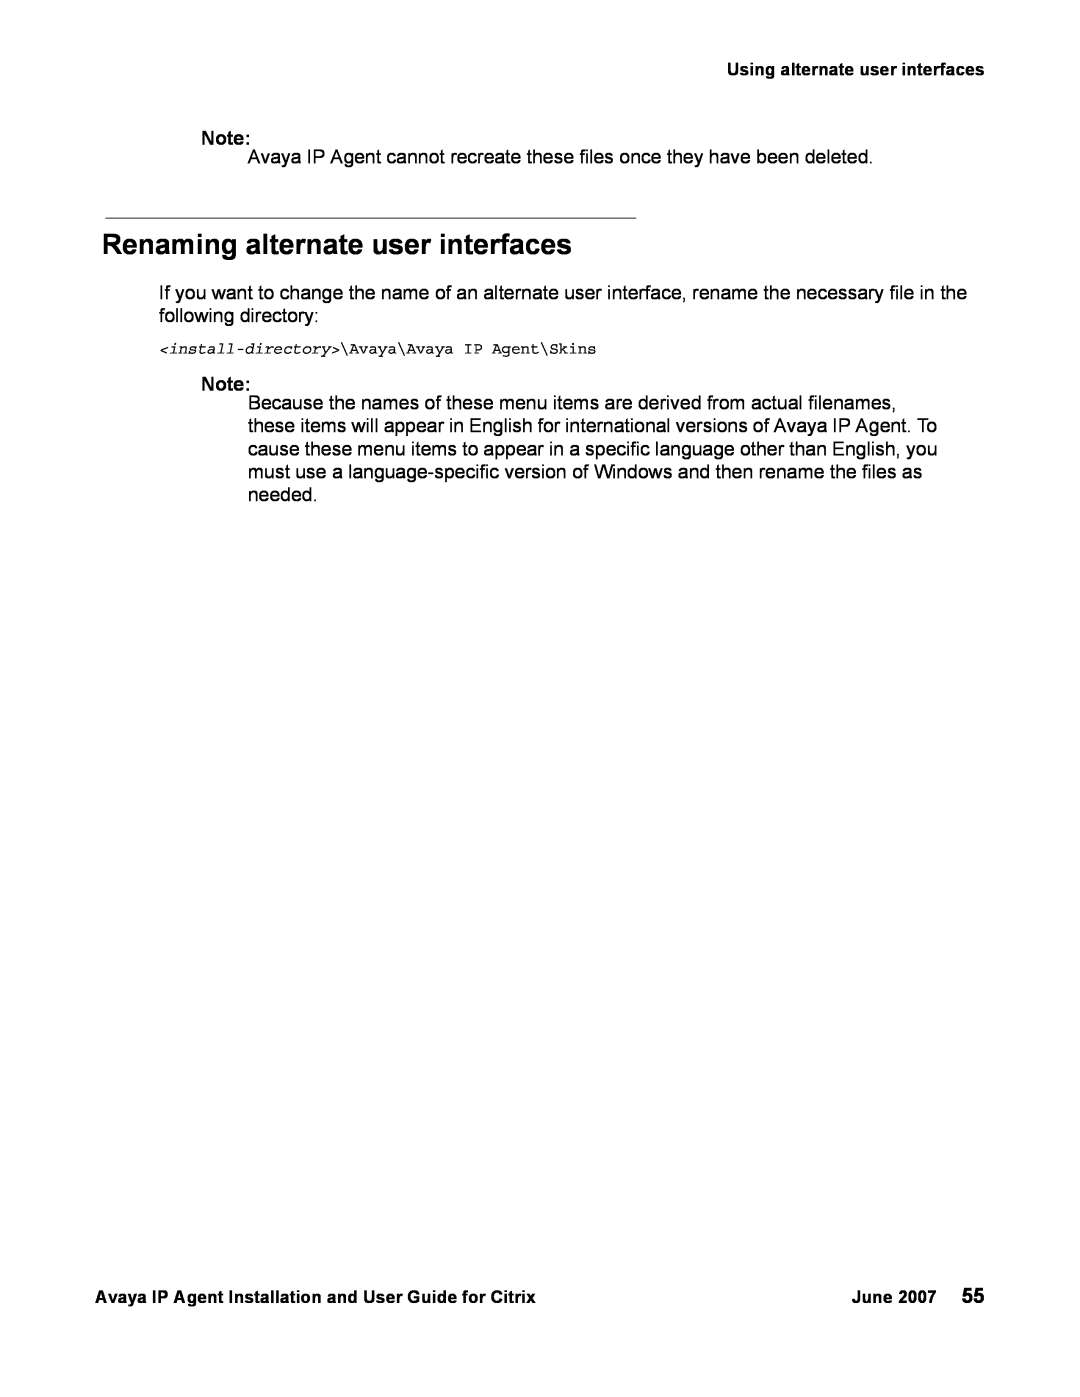 Avaya 7 manual Renaming alternate user interfaces 